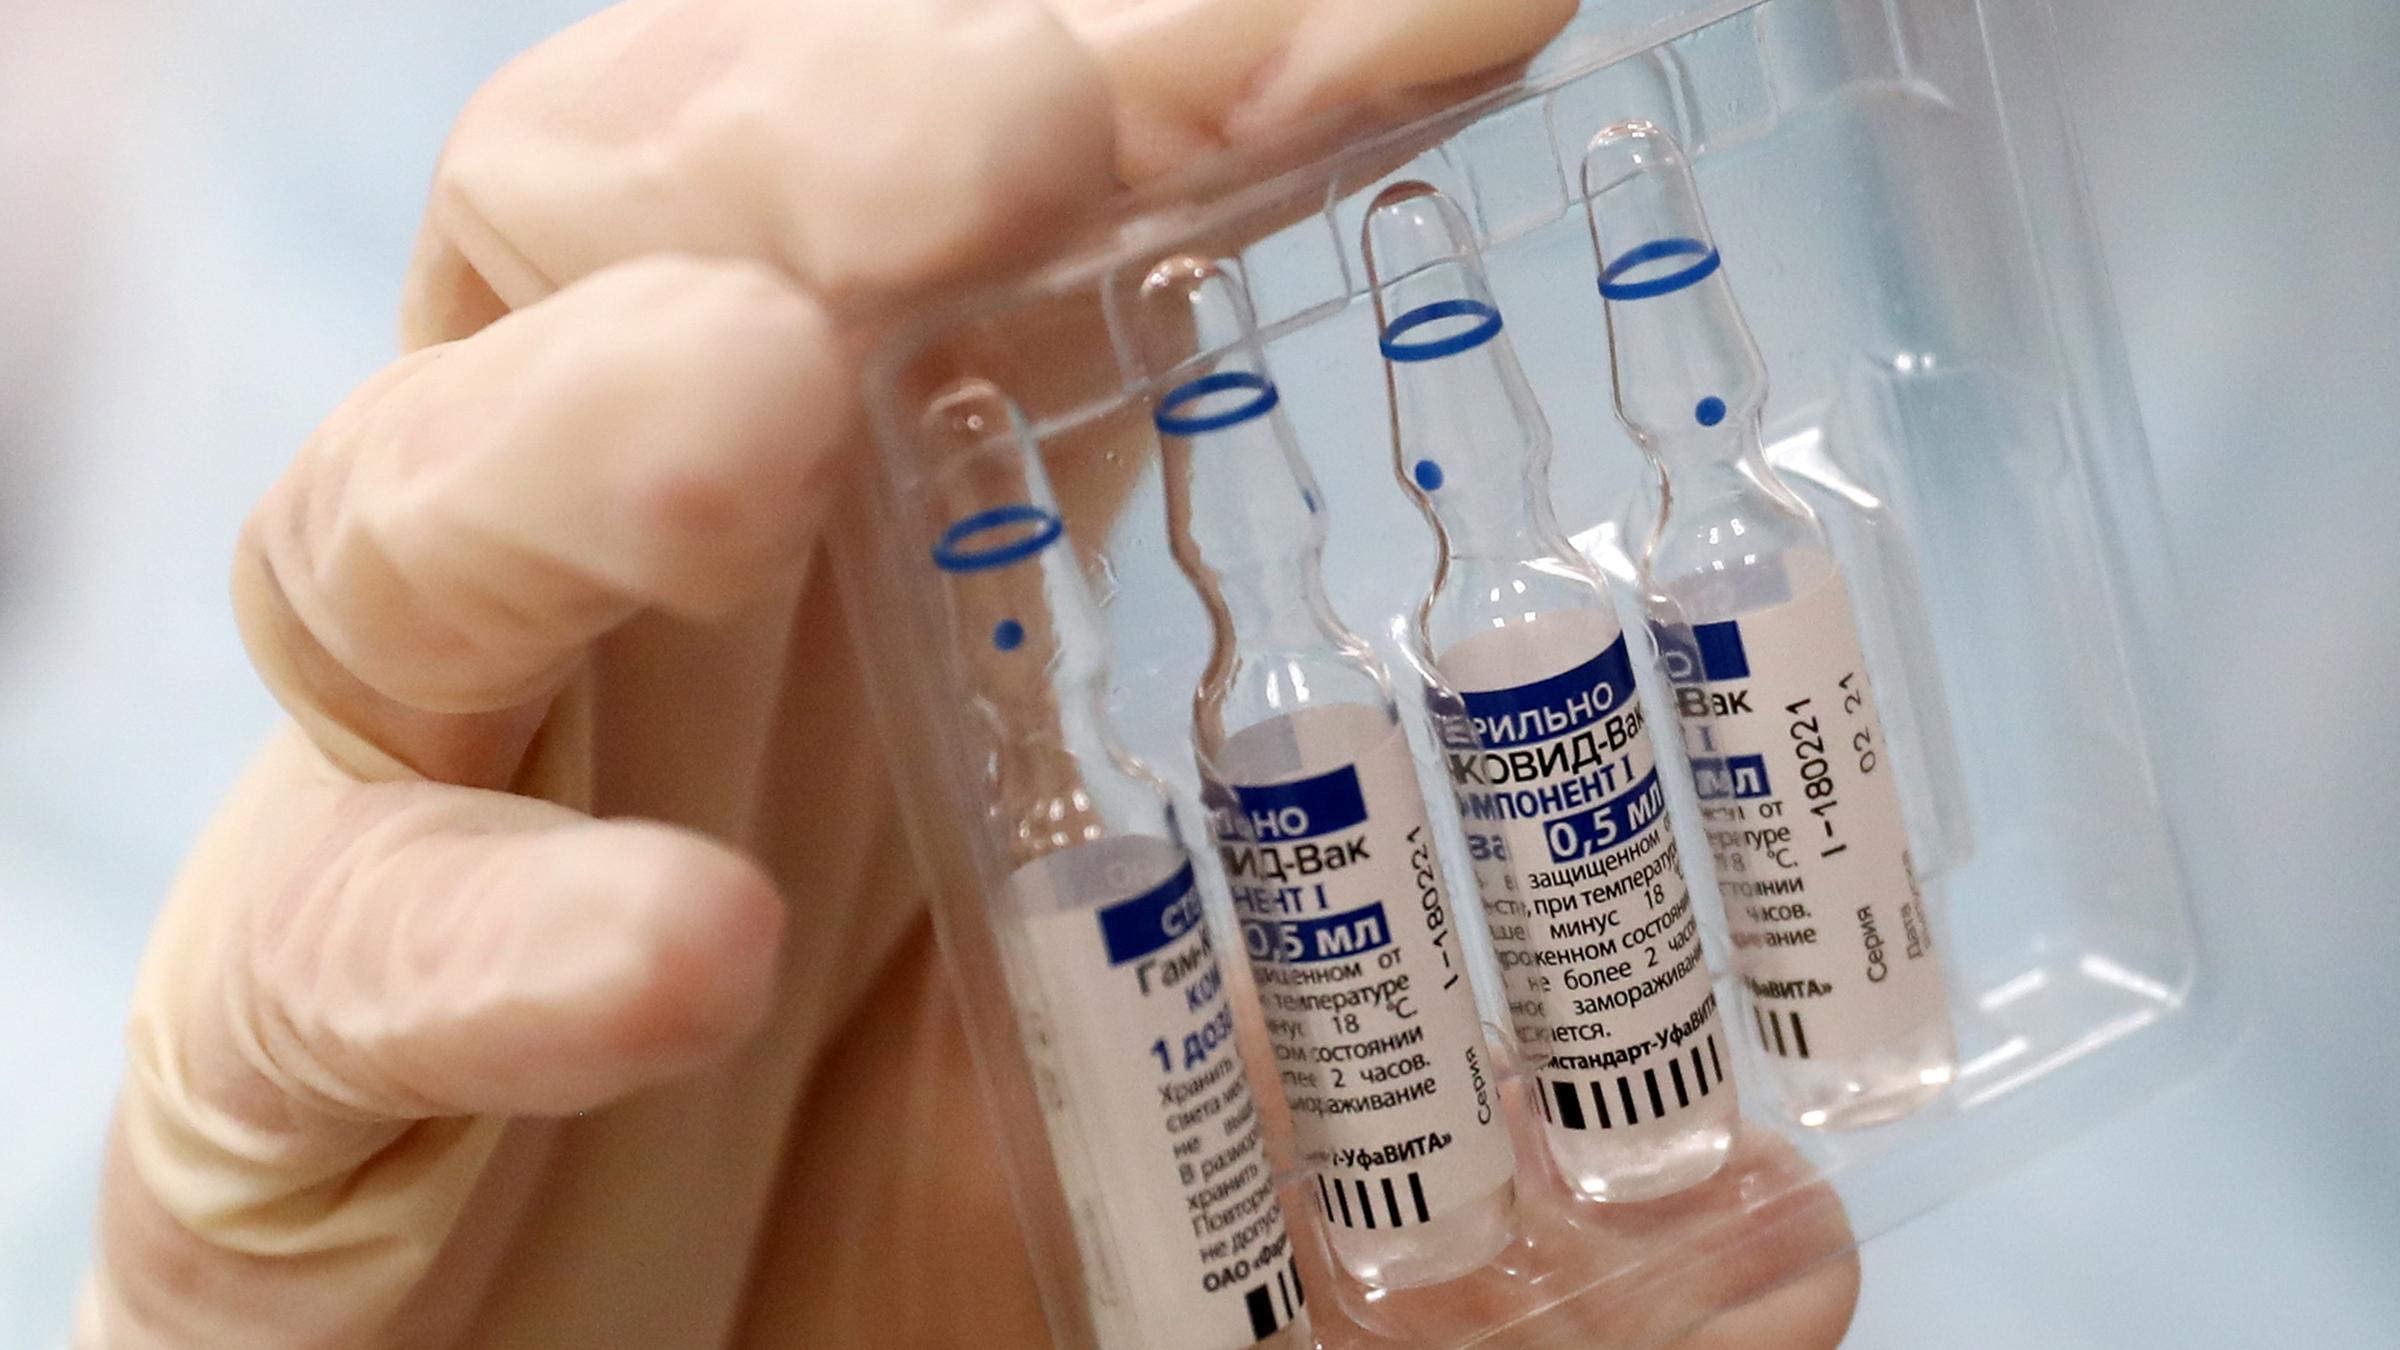 Лукашенко: вакцины против коронавируса должны стать достоянием человечества